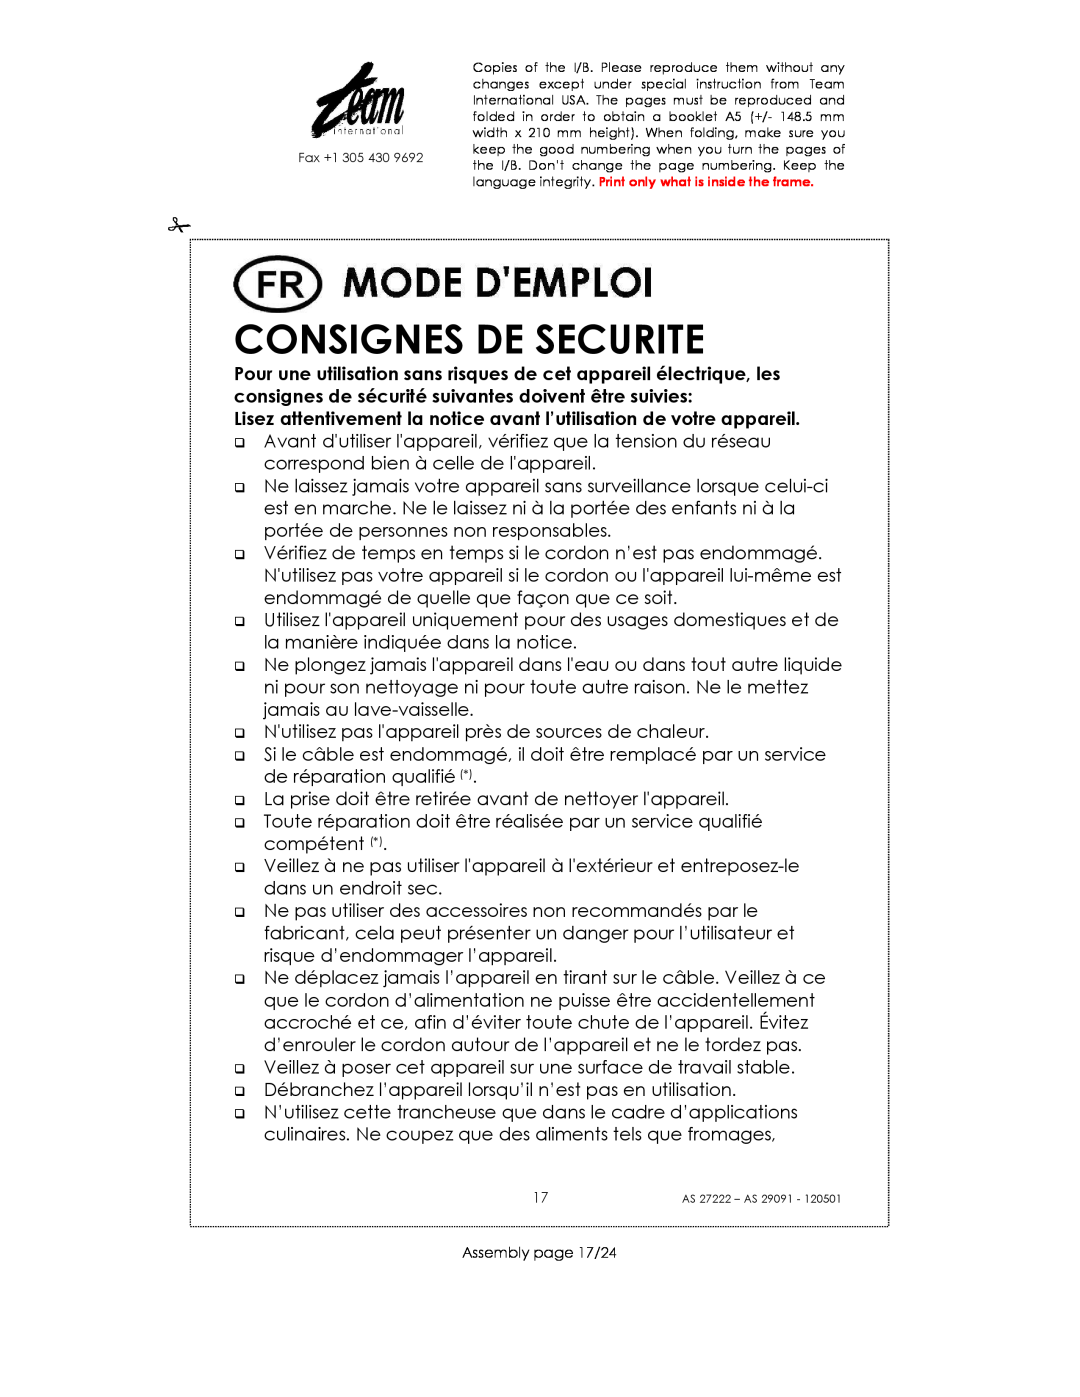 Kalorik AS 27222, AS 29091 manual Consignes De Securite, Lisez attentivement la notice avant l’utilisation de votre appareil 